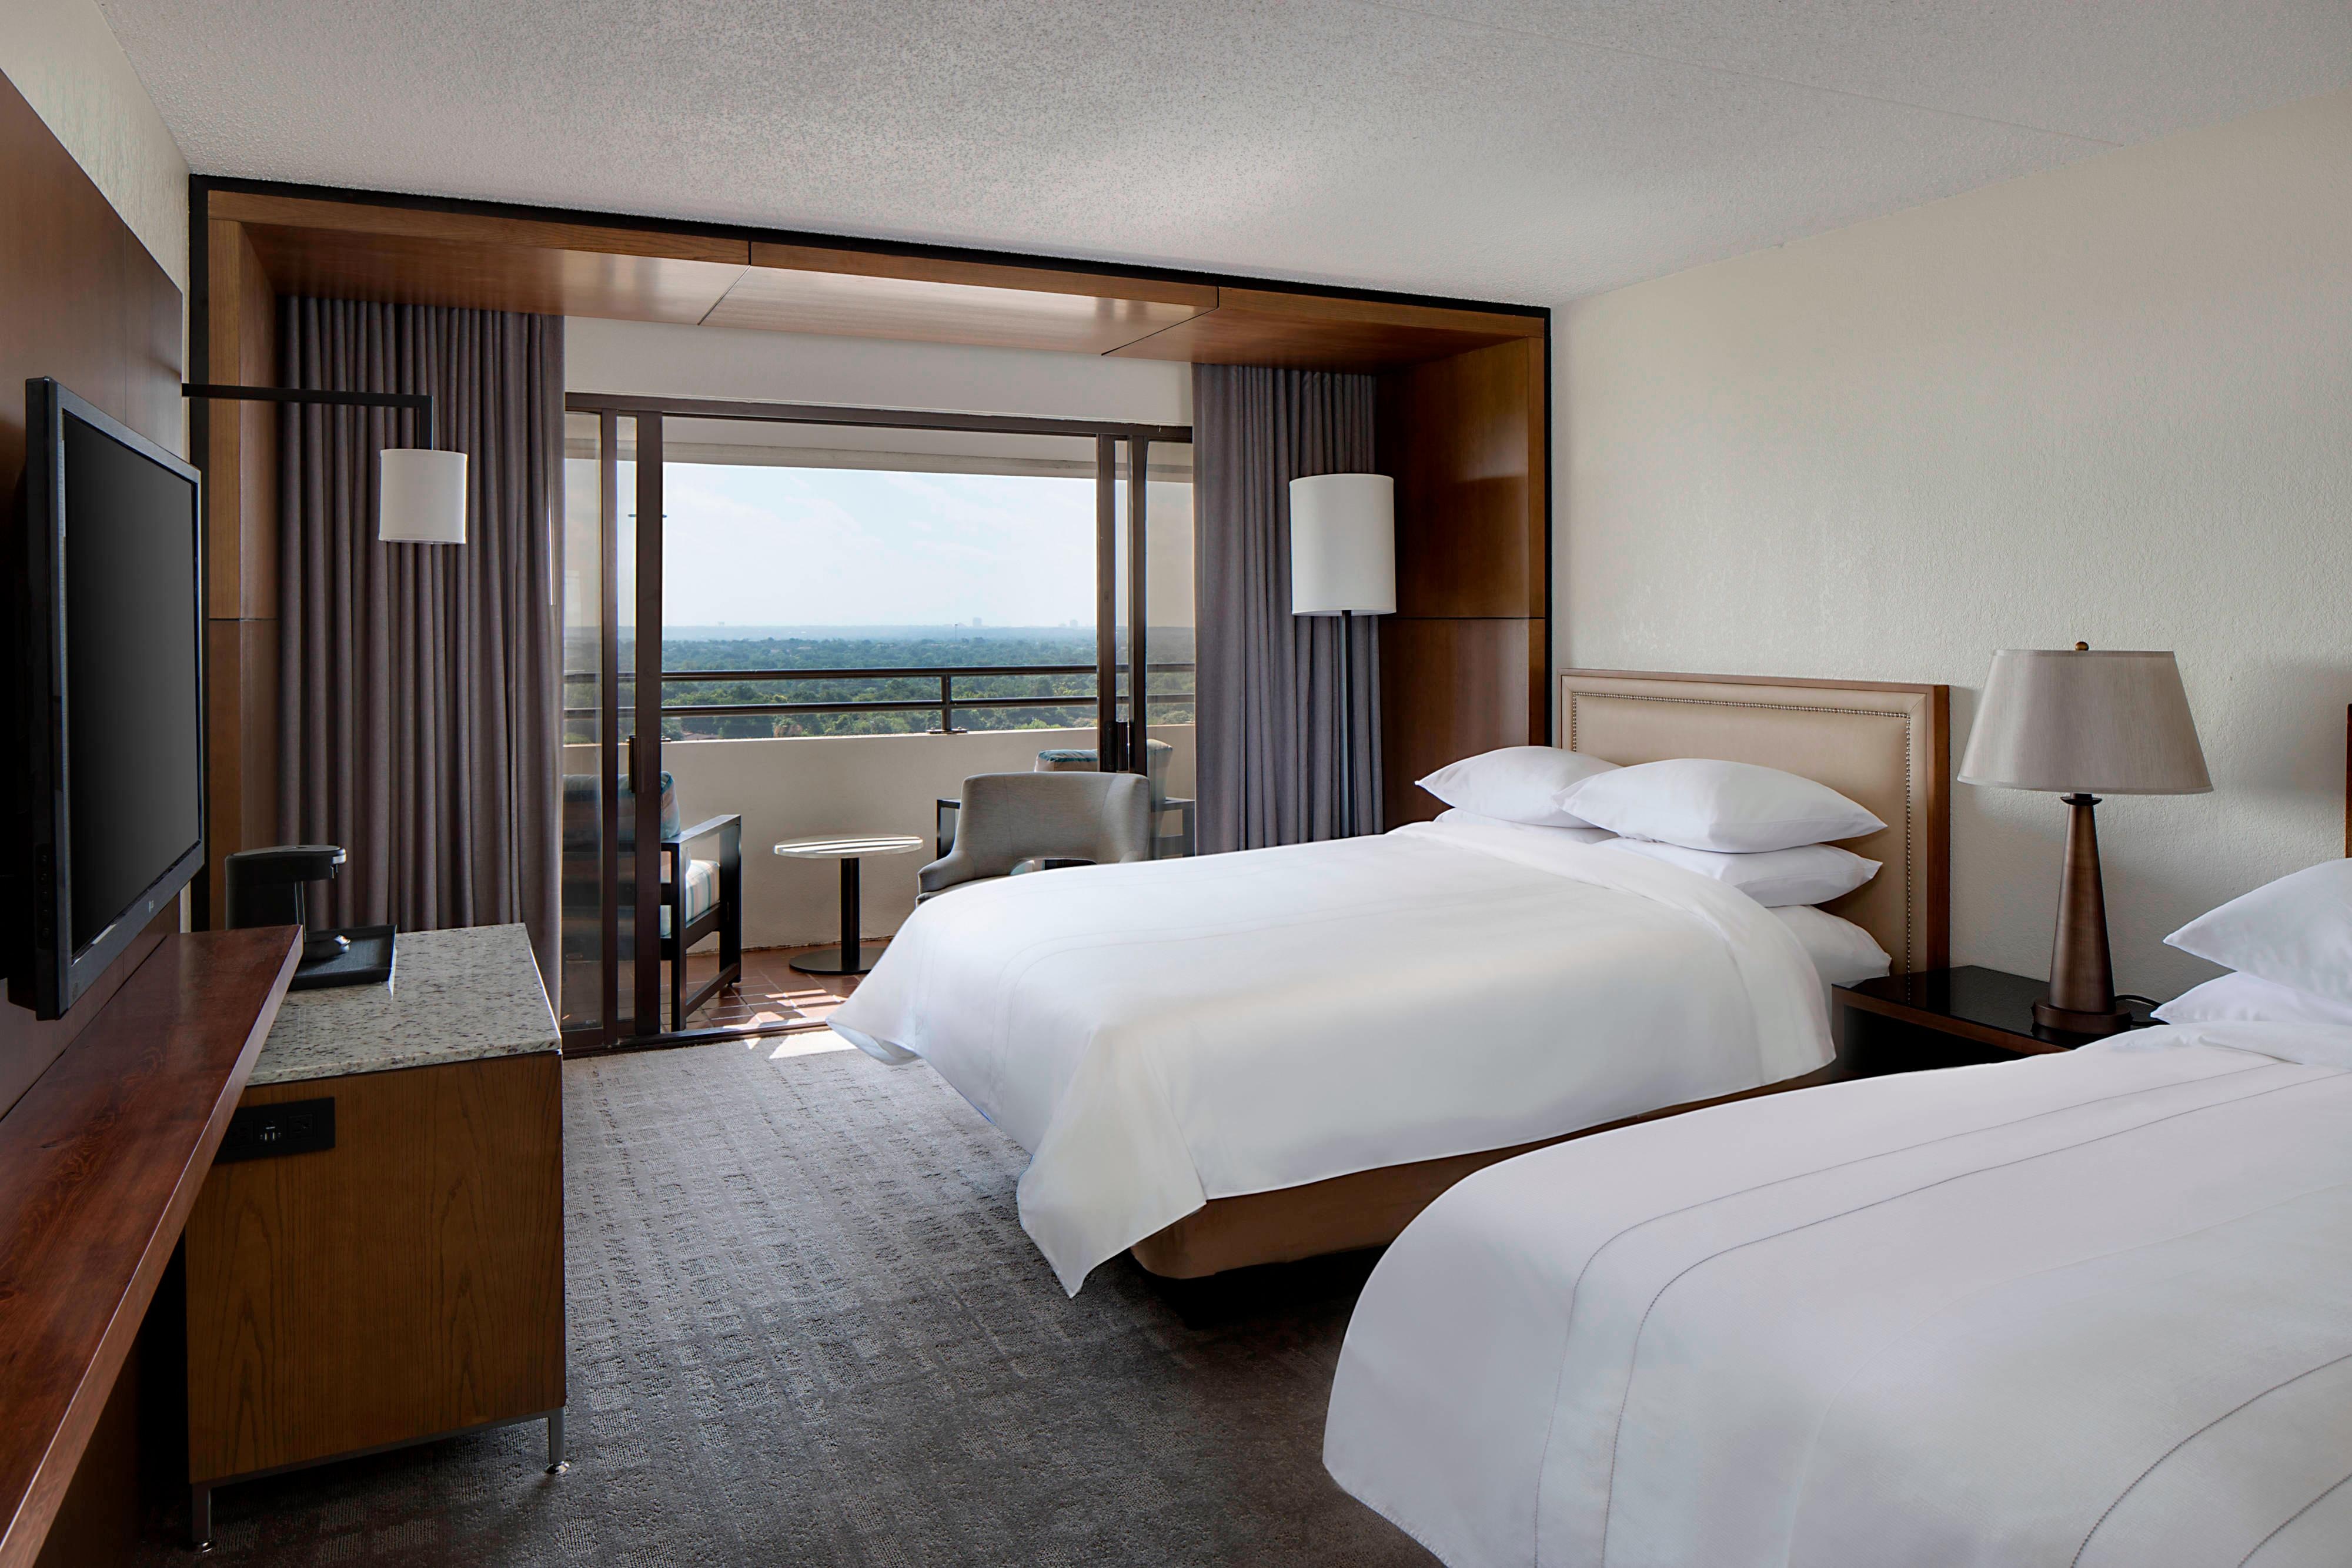 Guest Rooms San Antonio Six Flags Hotel | San Antonio ...